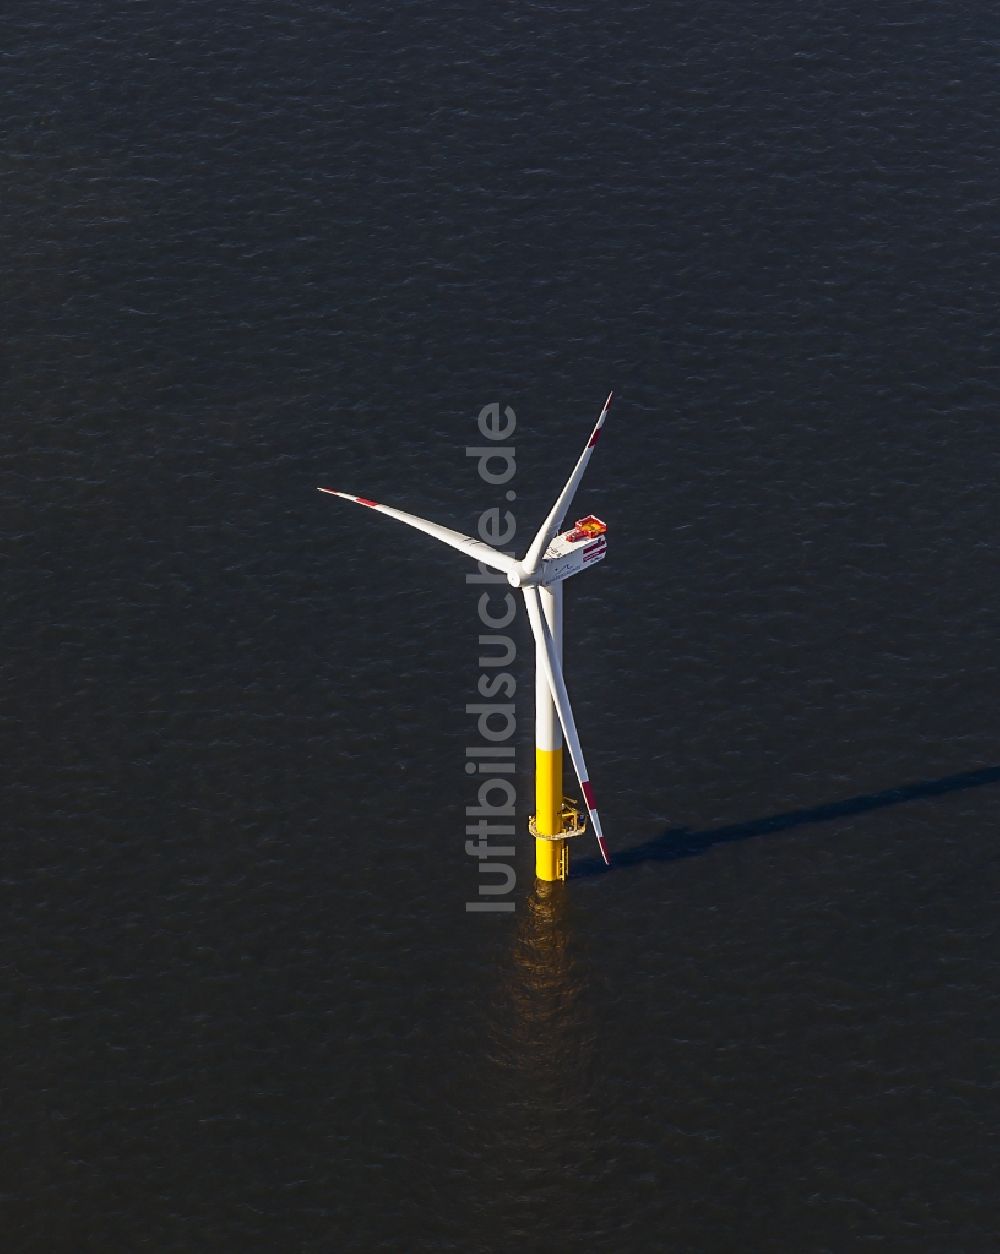 Nordergründe von oben - Windenergieanlagen (WEA) des Offshore-Windpark auf der Wasseroberfläche der Nordsee in Nordergründe im Bundesland Niedersachsen, Deutschland